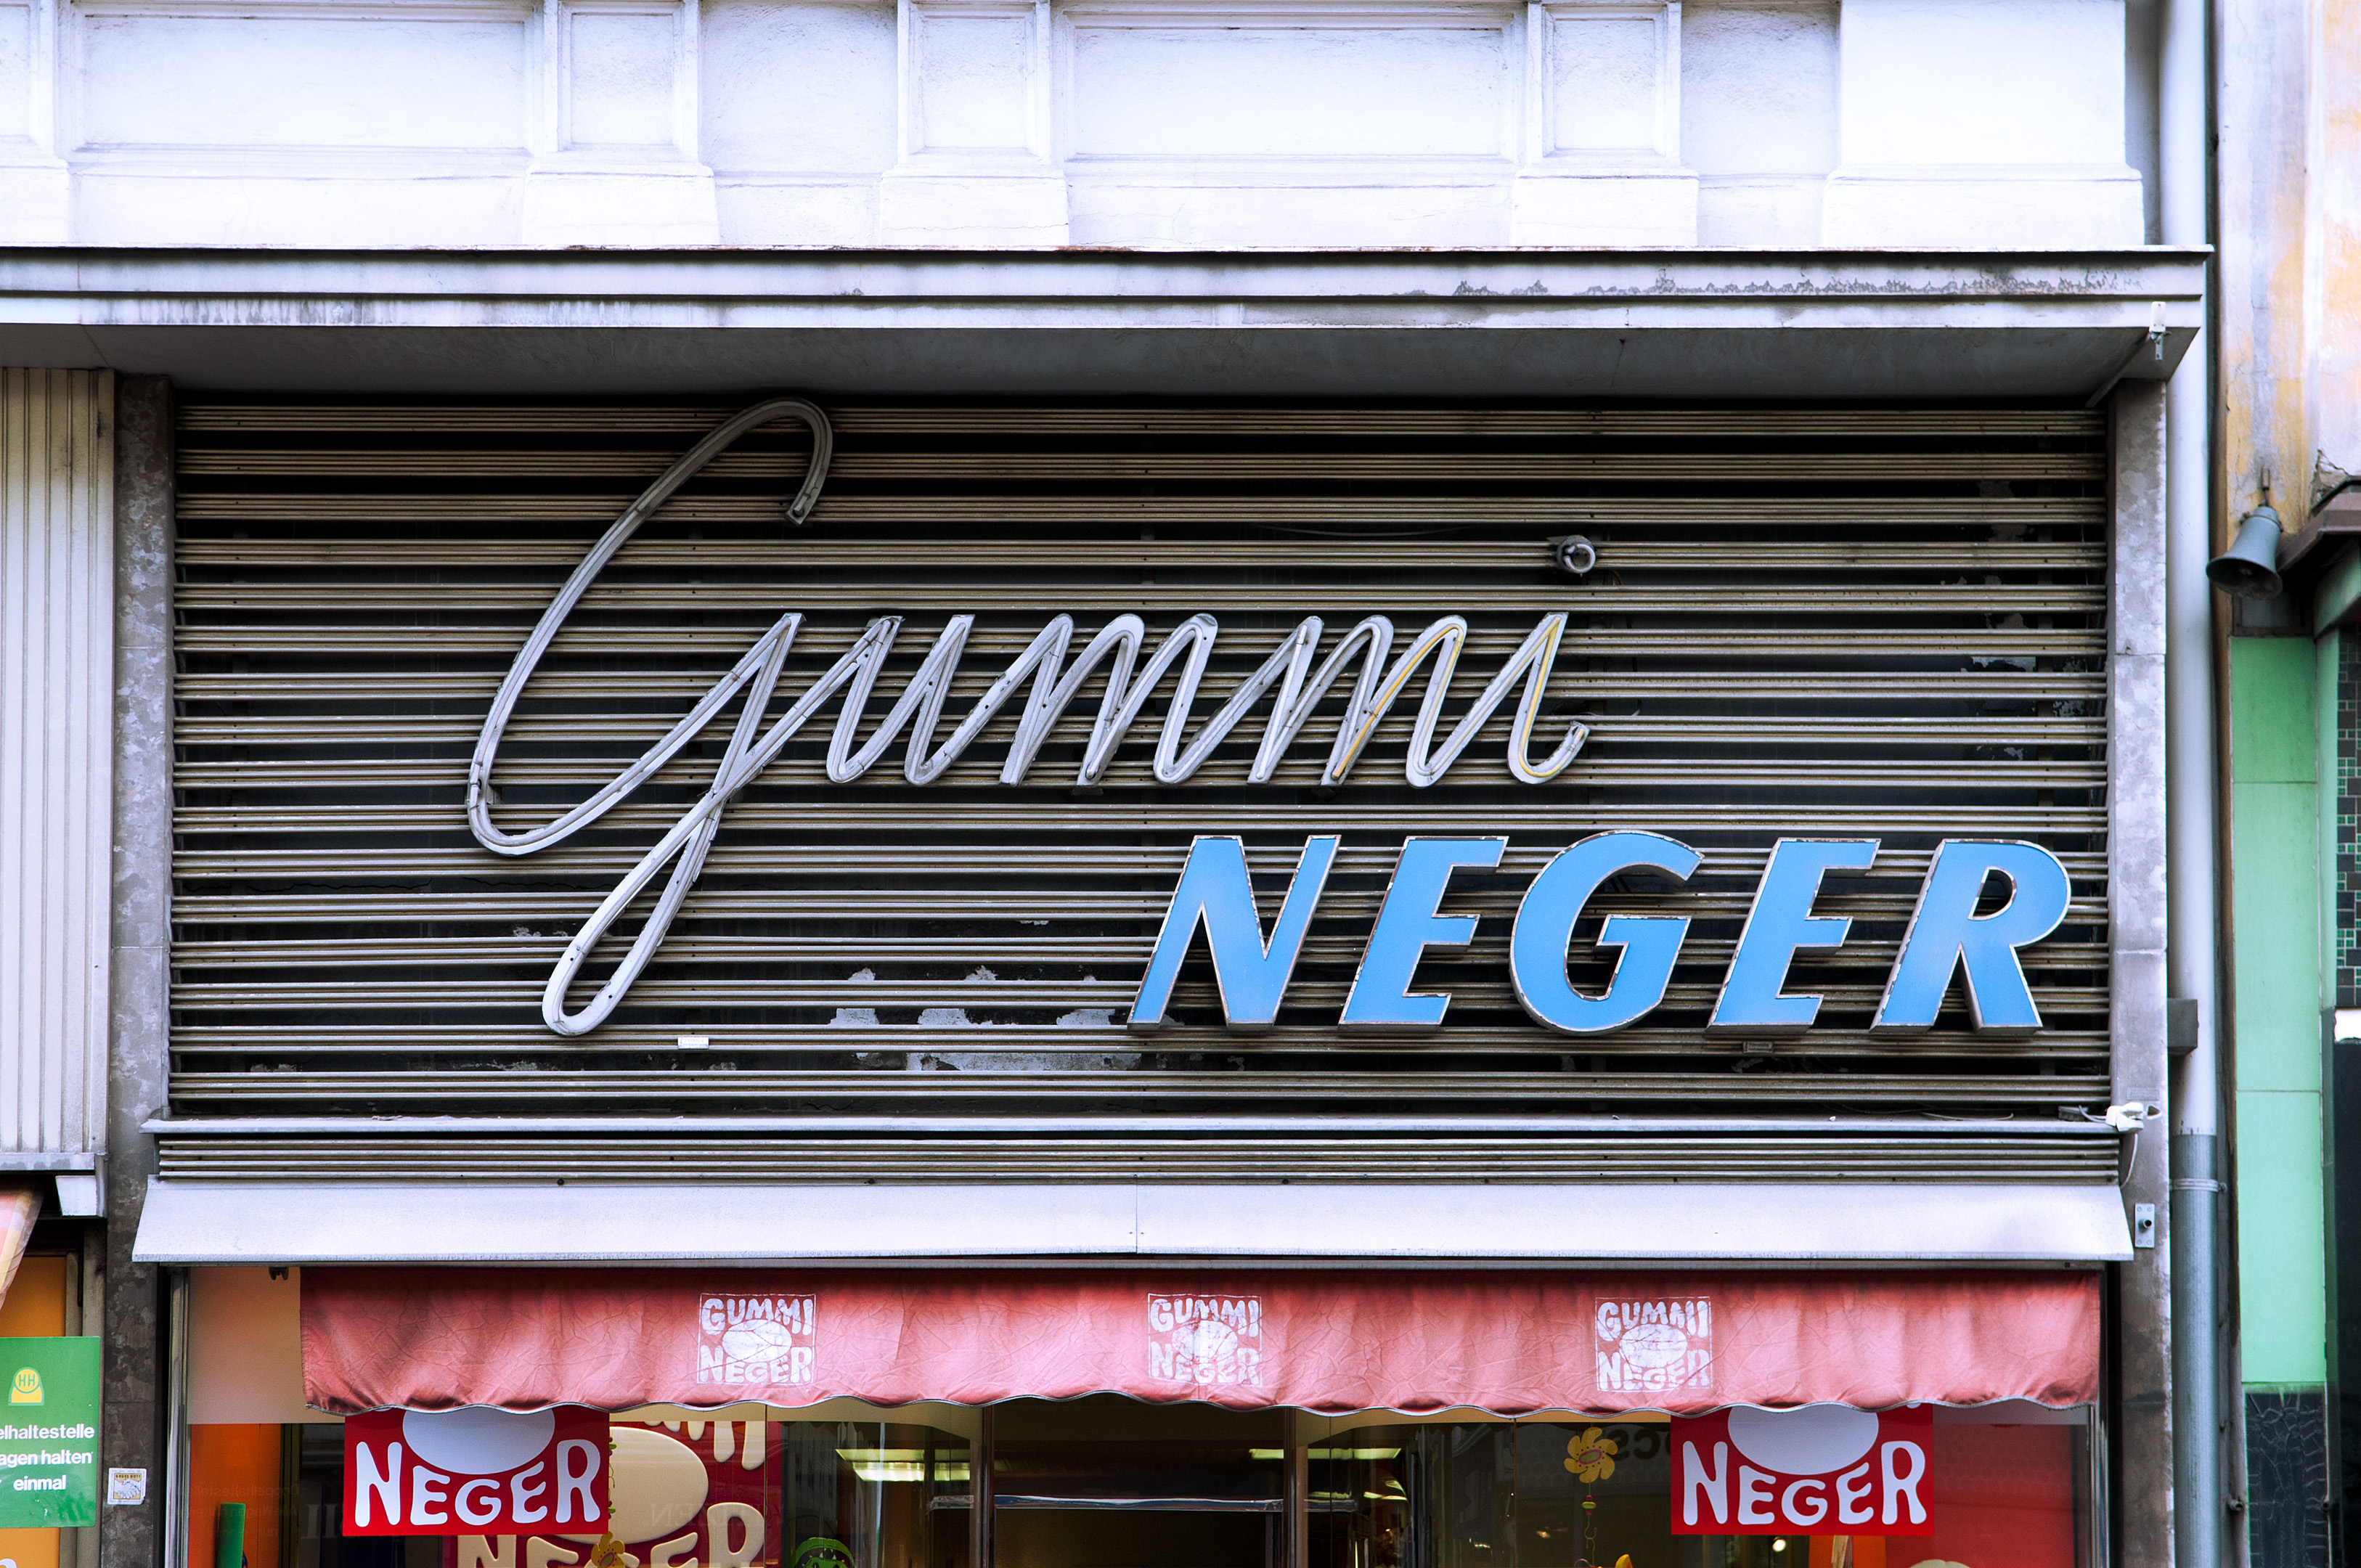 Werbefotografie Studio Oberfranken Street Aufnahme mit Reklameschrift "Gummi Neger" in Graz, Österreich. Feigfotodesign